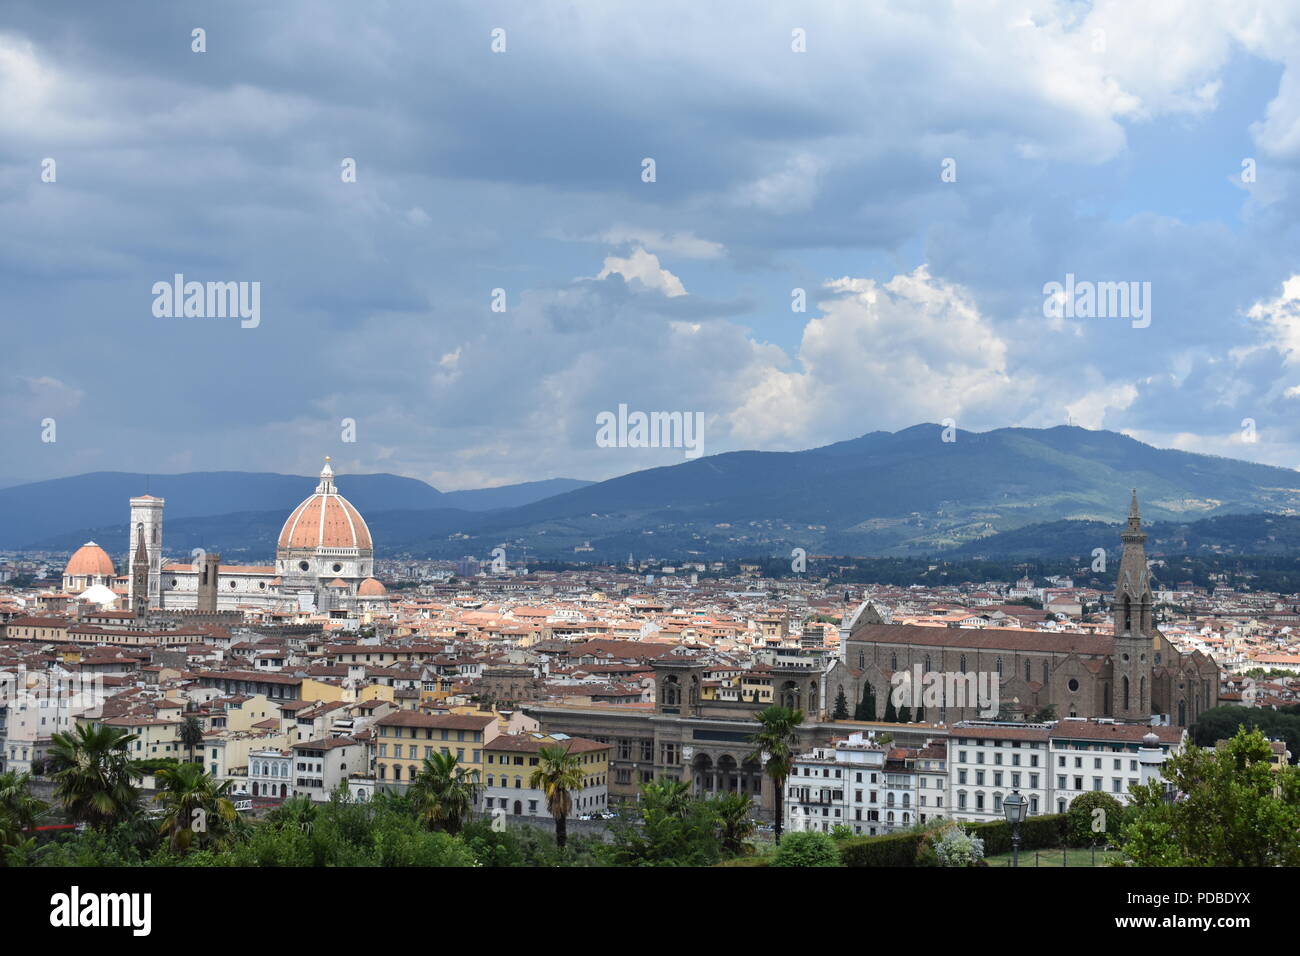 Stimmungsvolle Beleuchtung und Moody Blue und bewölkte Himmel über der Skyline von Florenz mit dem Dom und dem Turm, mit dem dunstigen toskanischen Hügel. Stockfoto